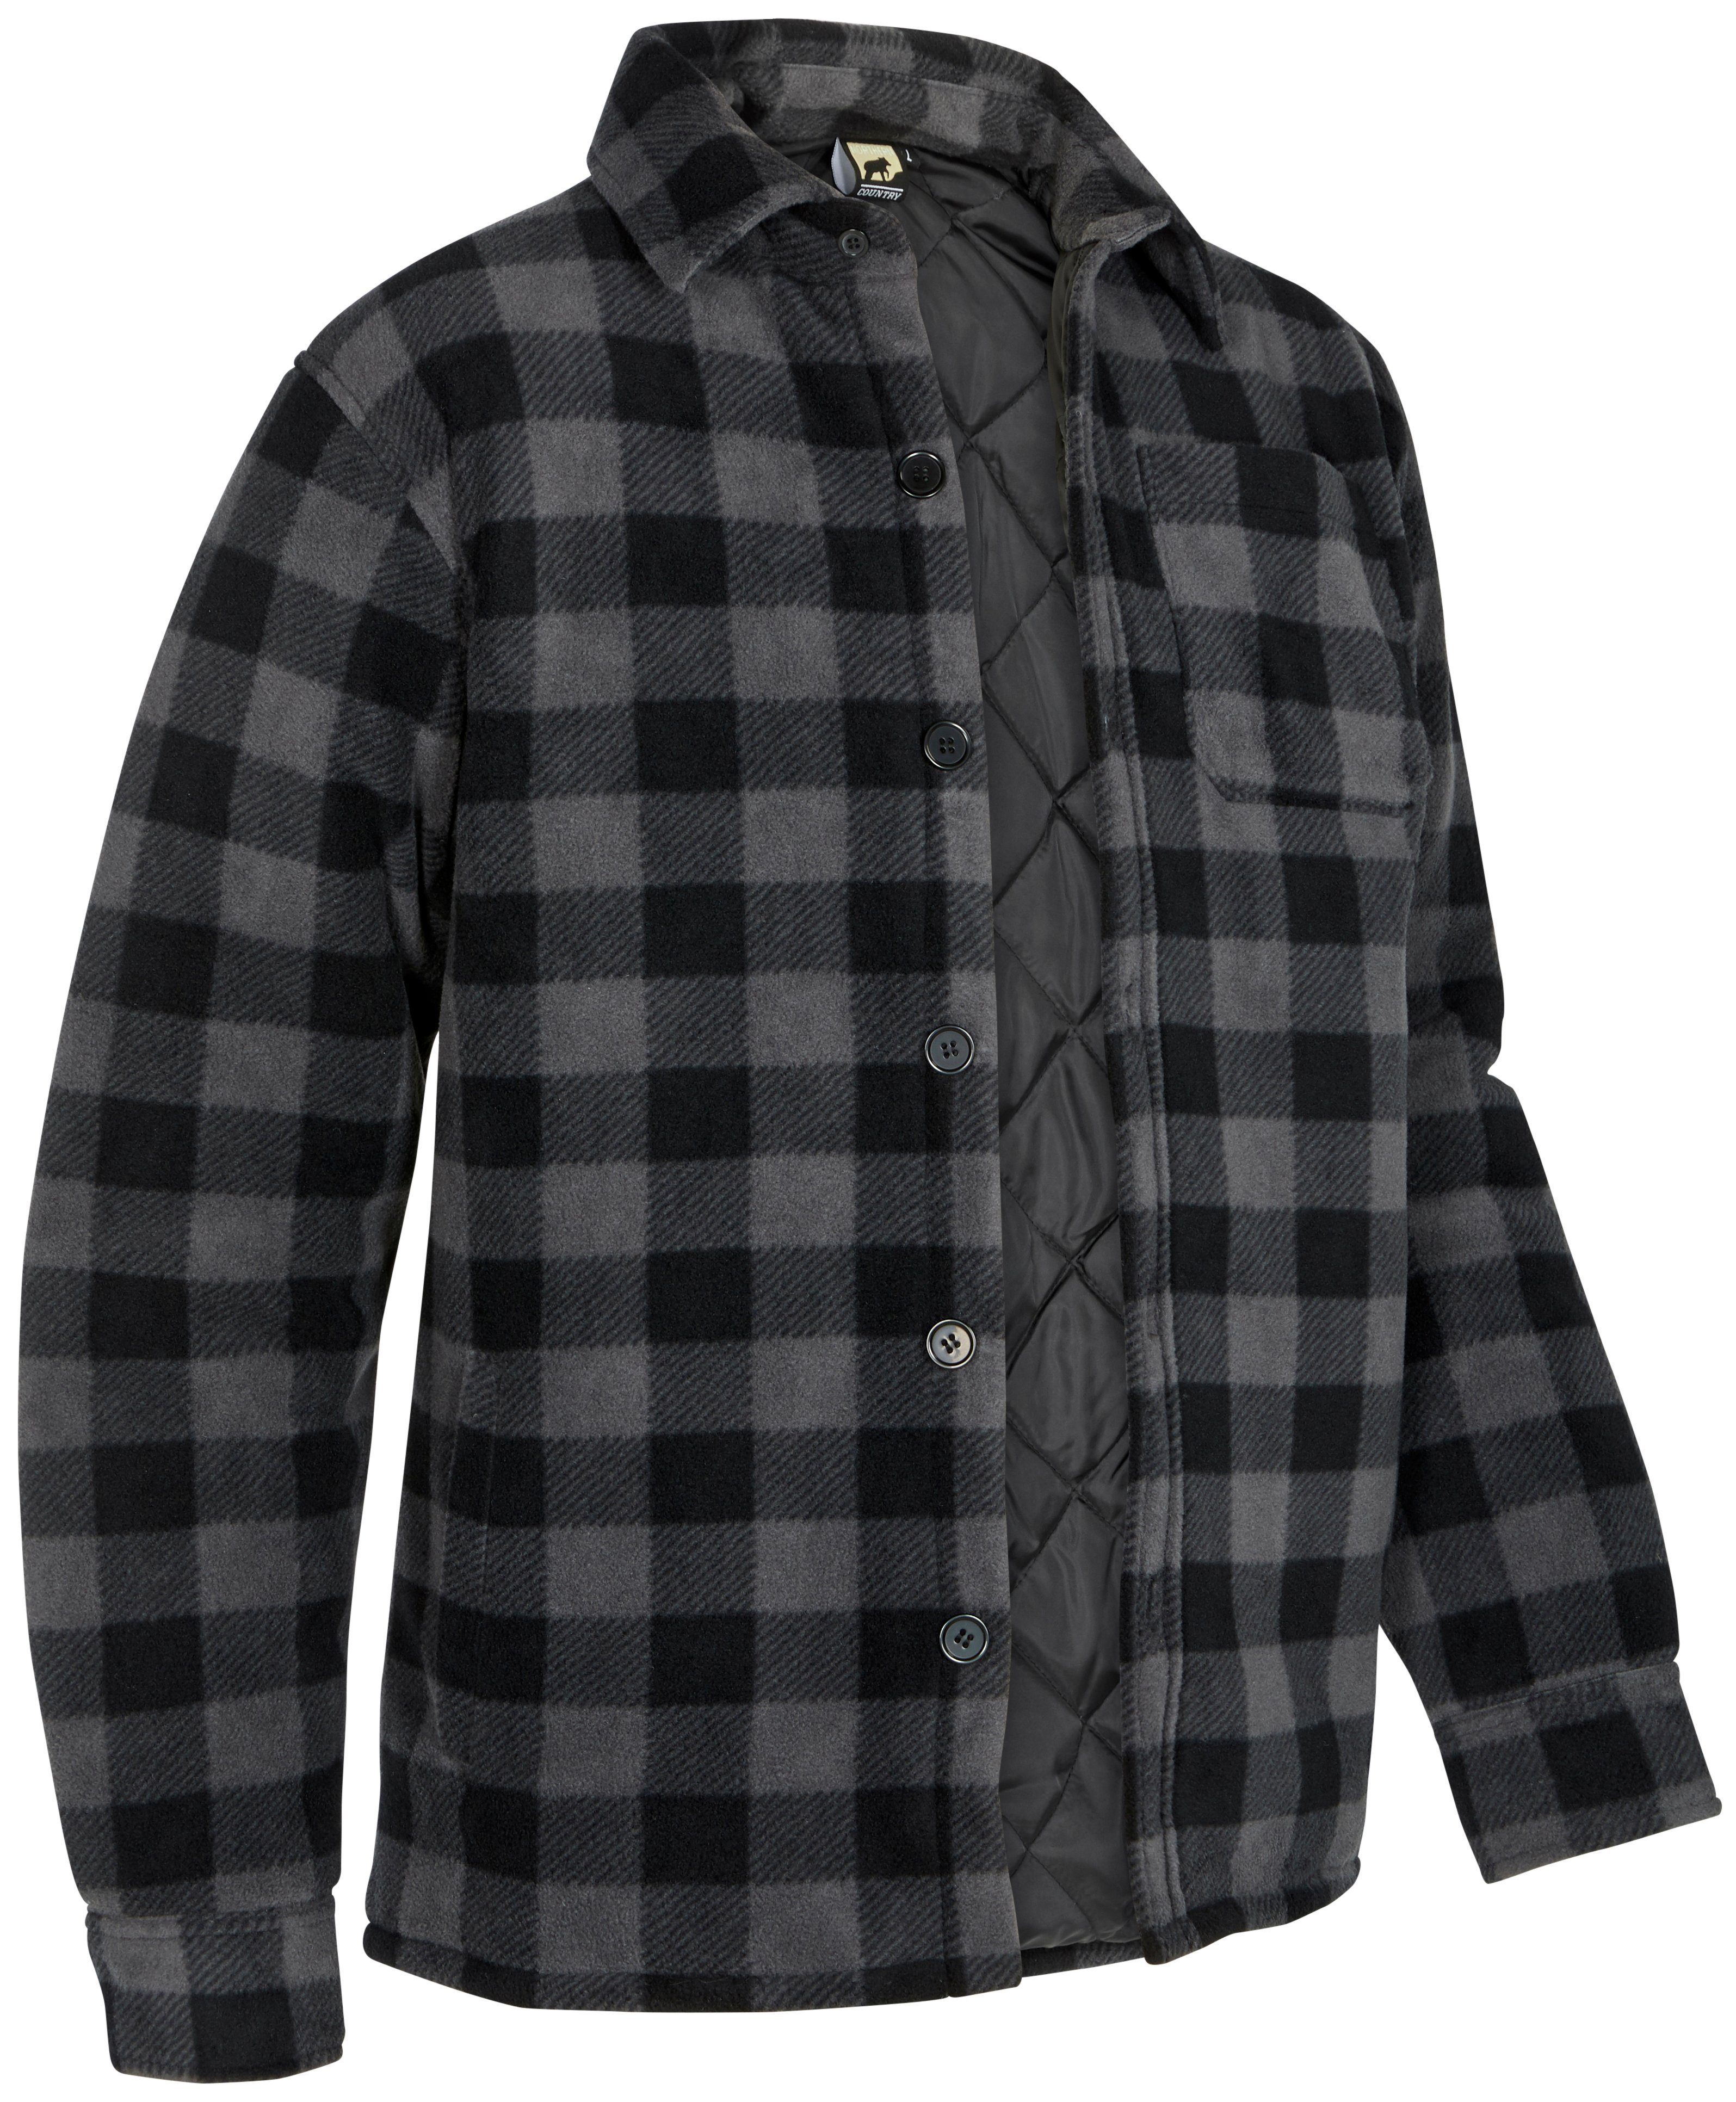 Northern Country Flanellhemd (als Jacke zu mit offen mit zugeknöpft Rücken, tragen) oder Taschen, grau-schwarz gefüttert, Hemd verlängertem warm Flanellstoff 5